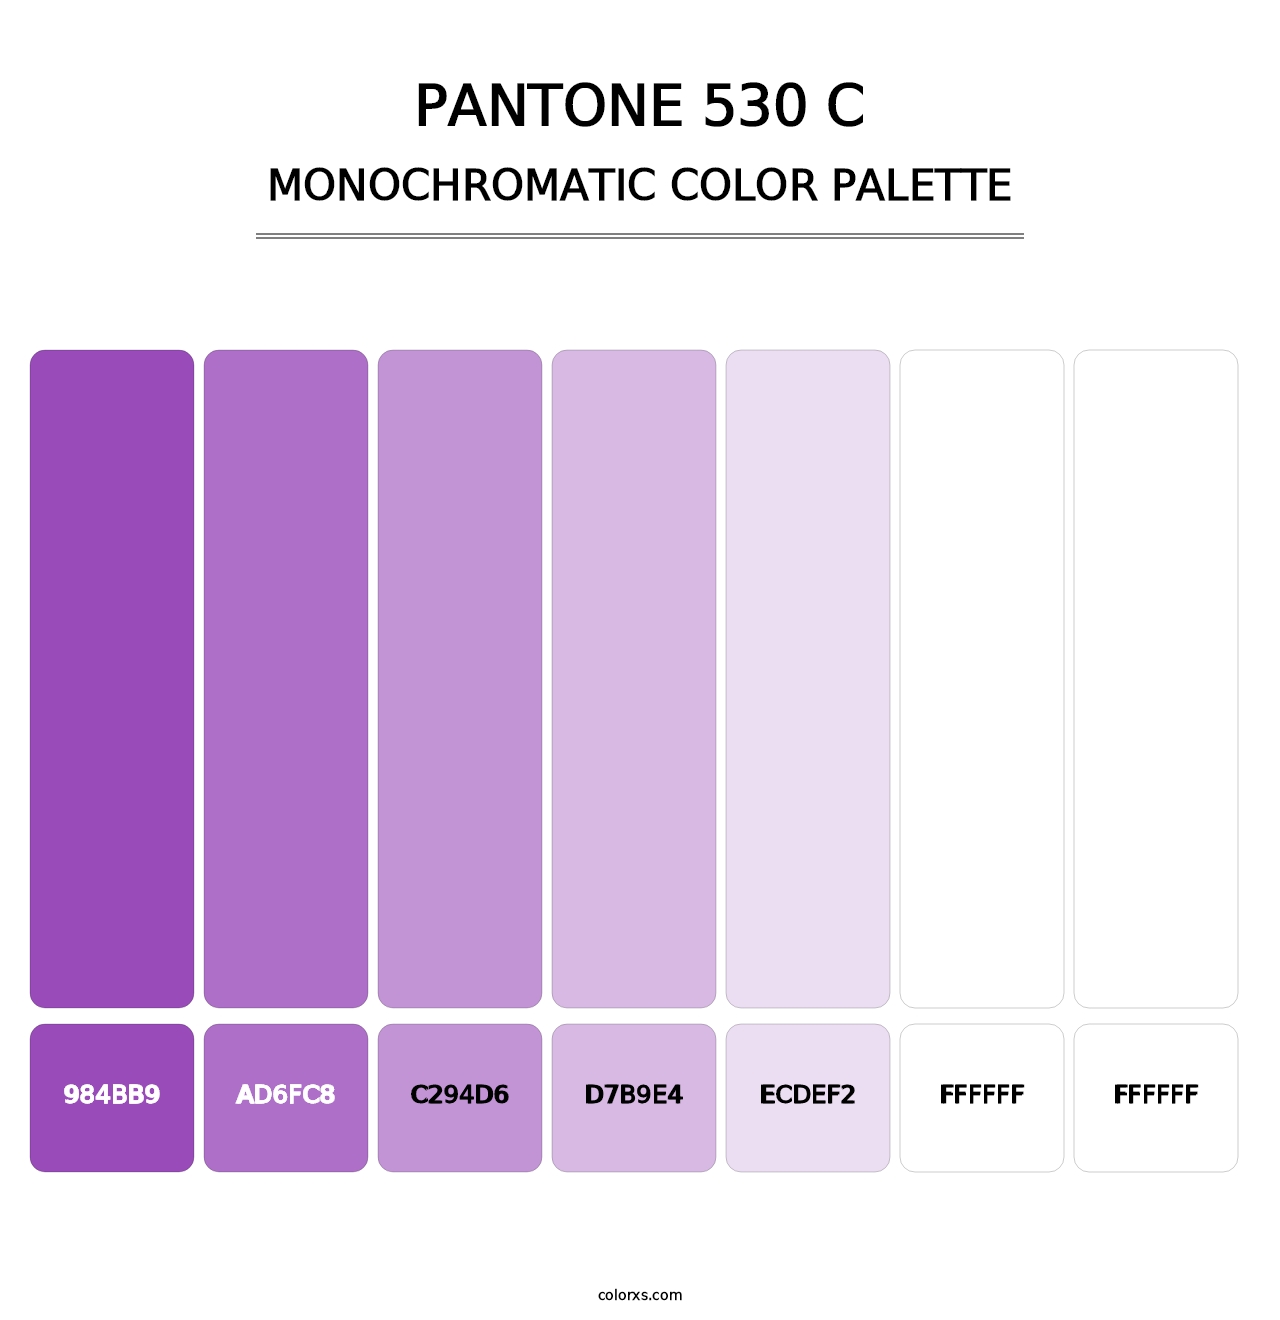 PANTONE 530 C - Monochromatic Color Palette